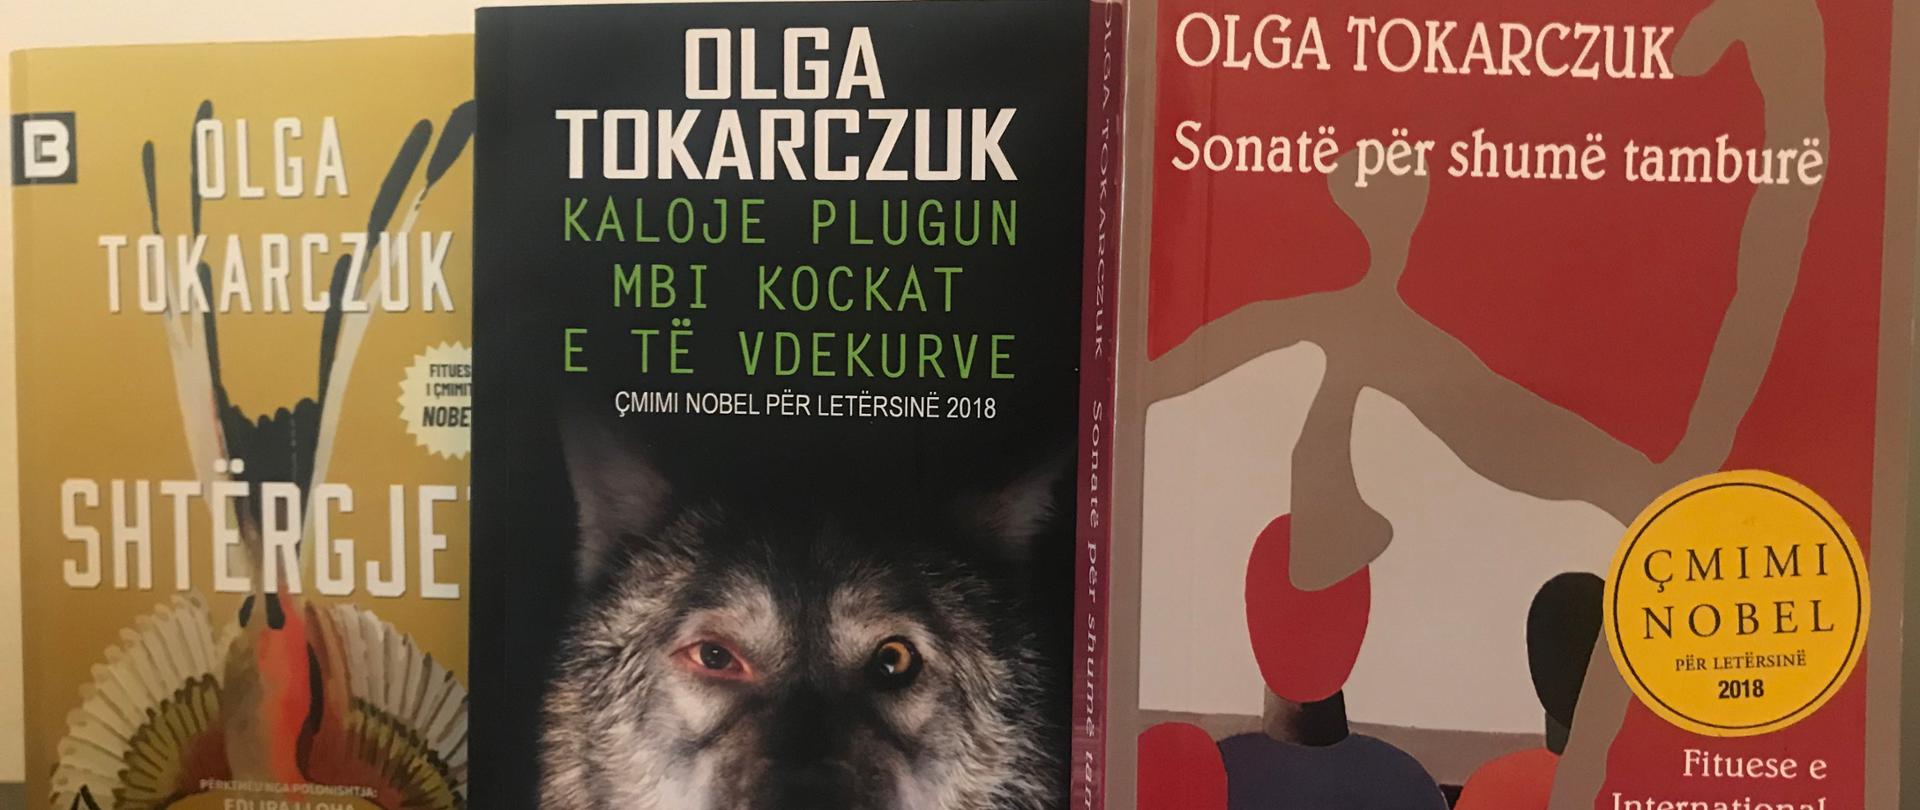 Od końca sierpnia br. na rynku wydawniczym w Albanii ukazały się trzy pozycje polskiej Noblistki Olgi Tokarczuk.